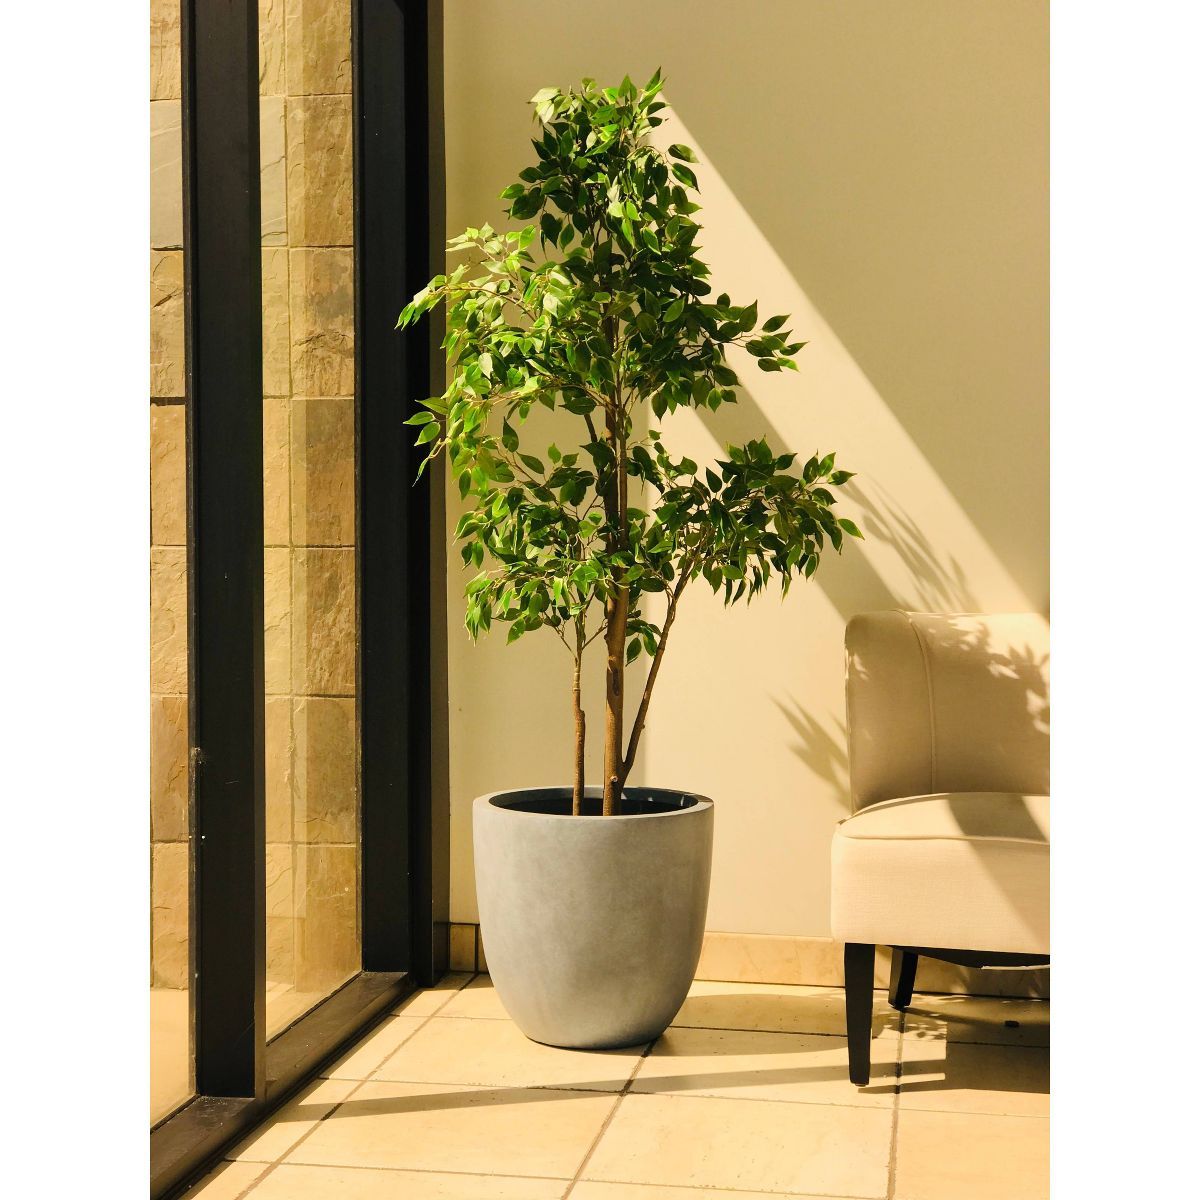 Rosemead Home & Garden, Inc. 9" Concrete/Fiberglass Elegant Indoor/Outdoor Planter Slate Gray | Target